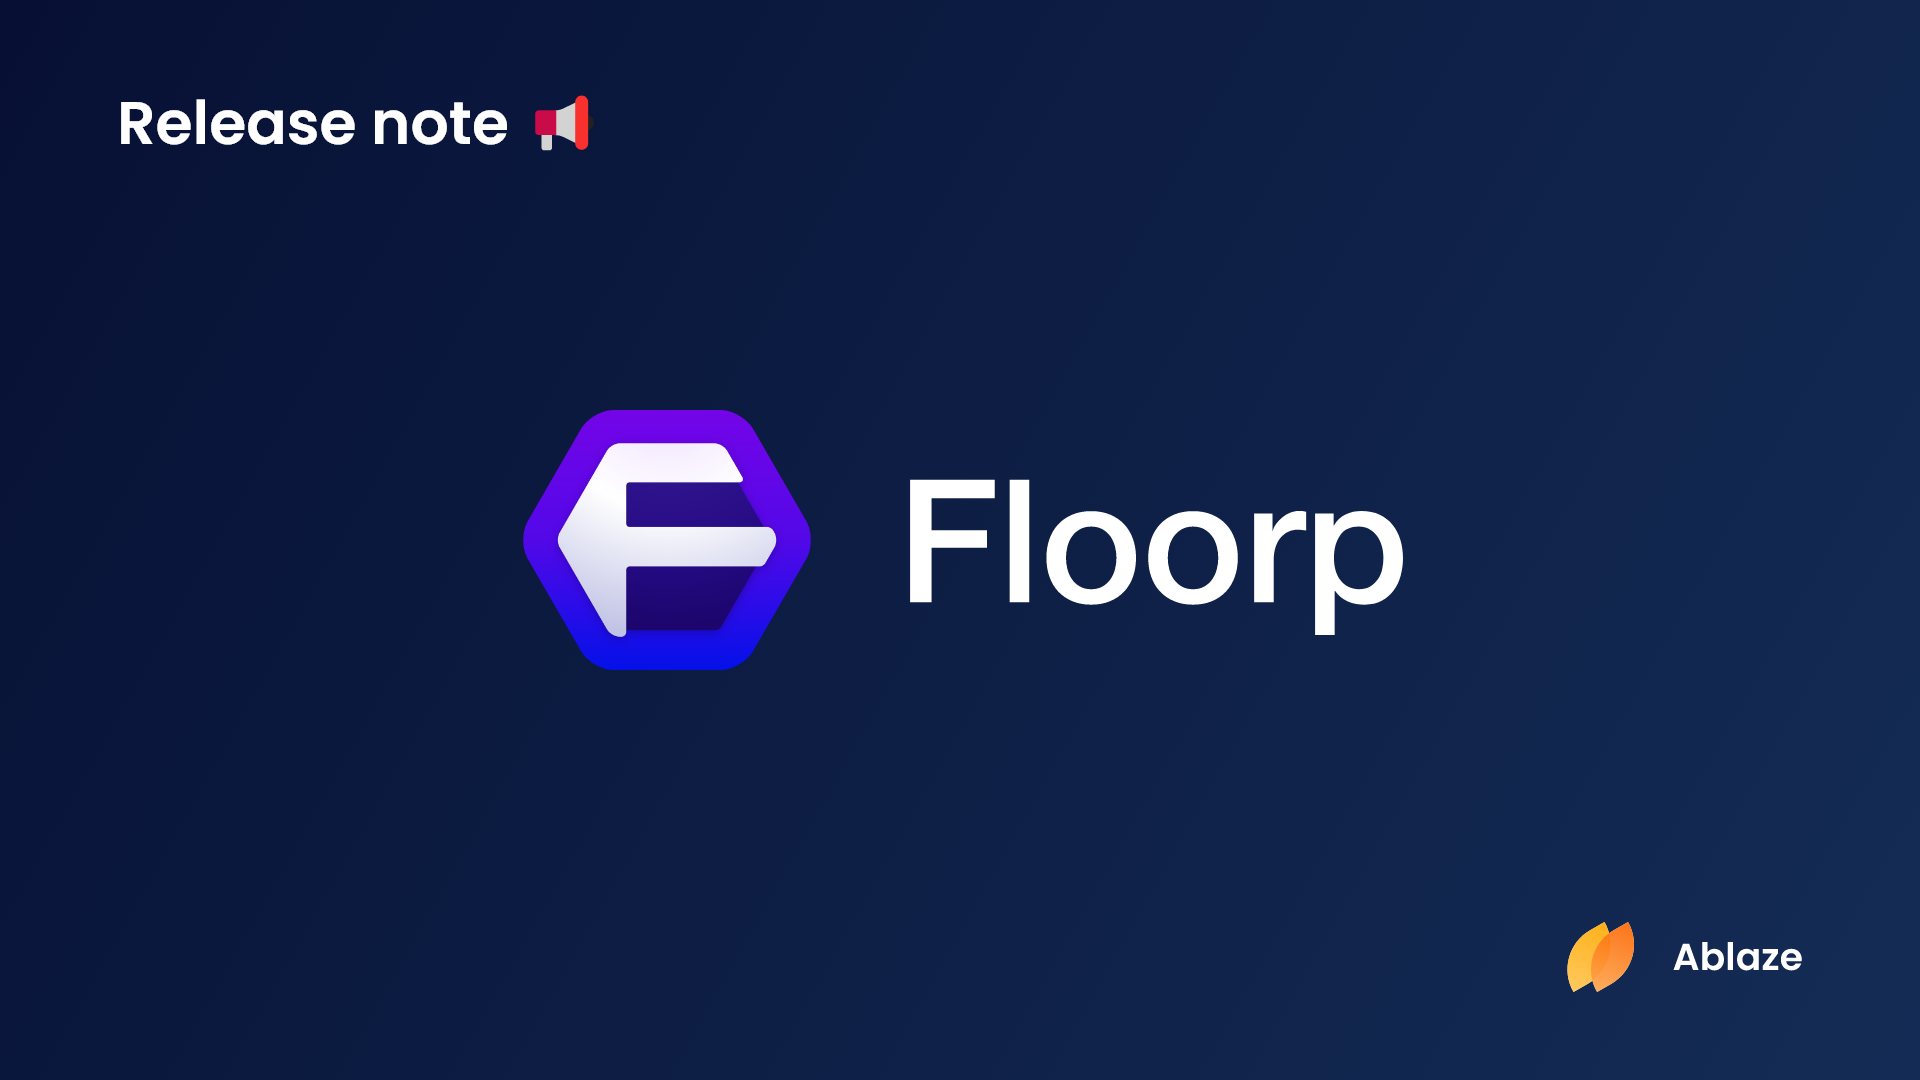 Floorp ブラウザー | バージョン 10.10.1 リリースノート